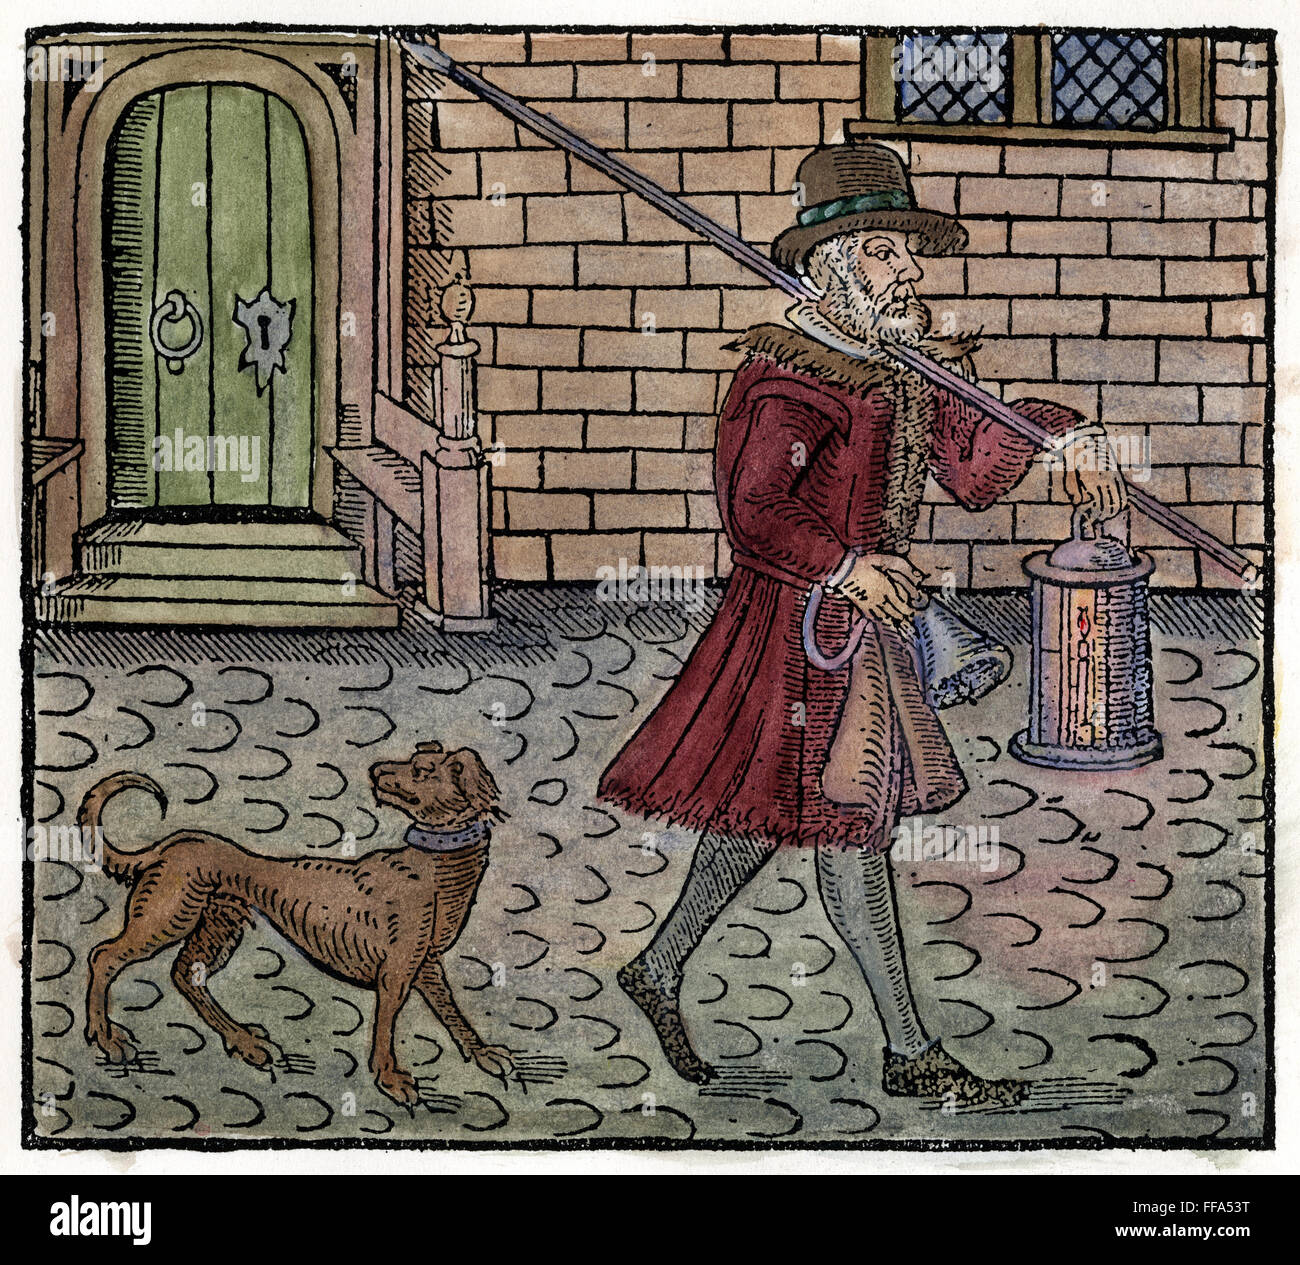 LONDON: NACHTWÄCHTER. NUM-Nachtwächter seine Runden in London machen. Holzschnitt, Englisch, 1608. Stockfoto